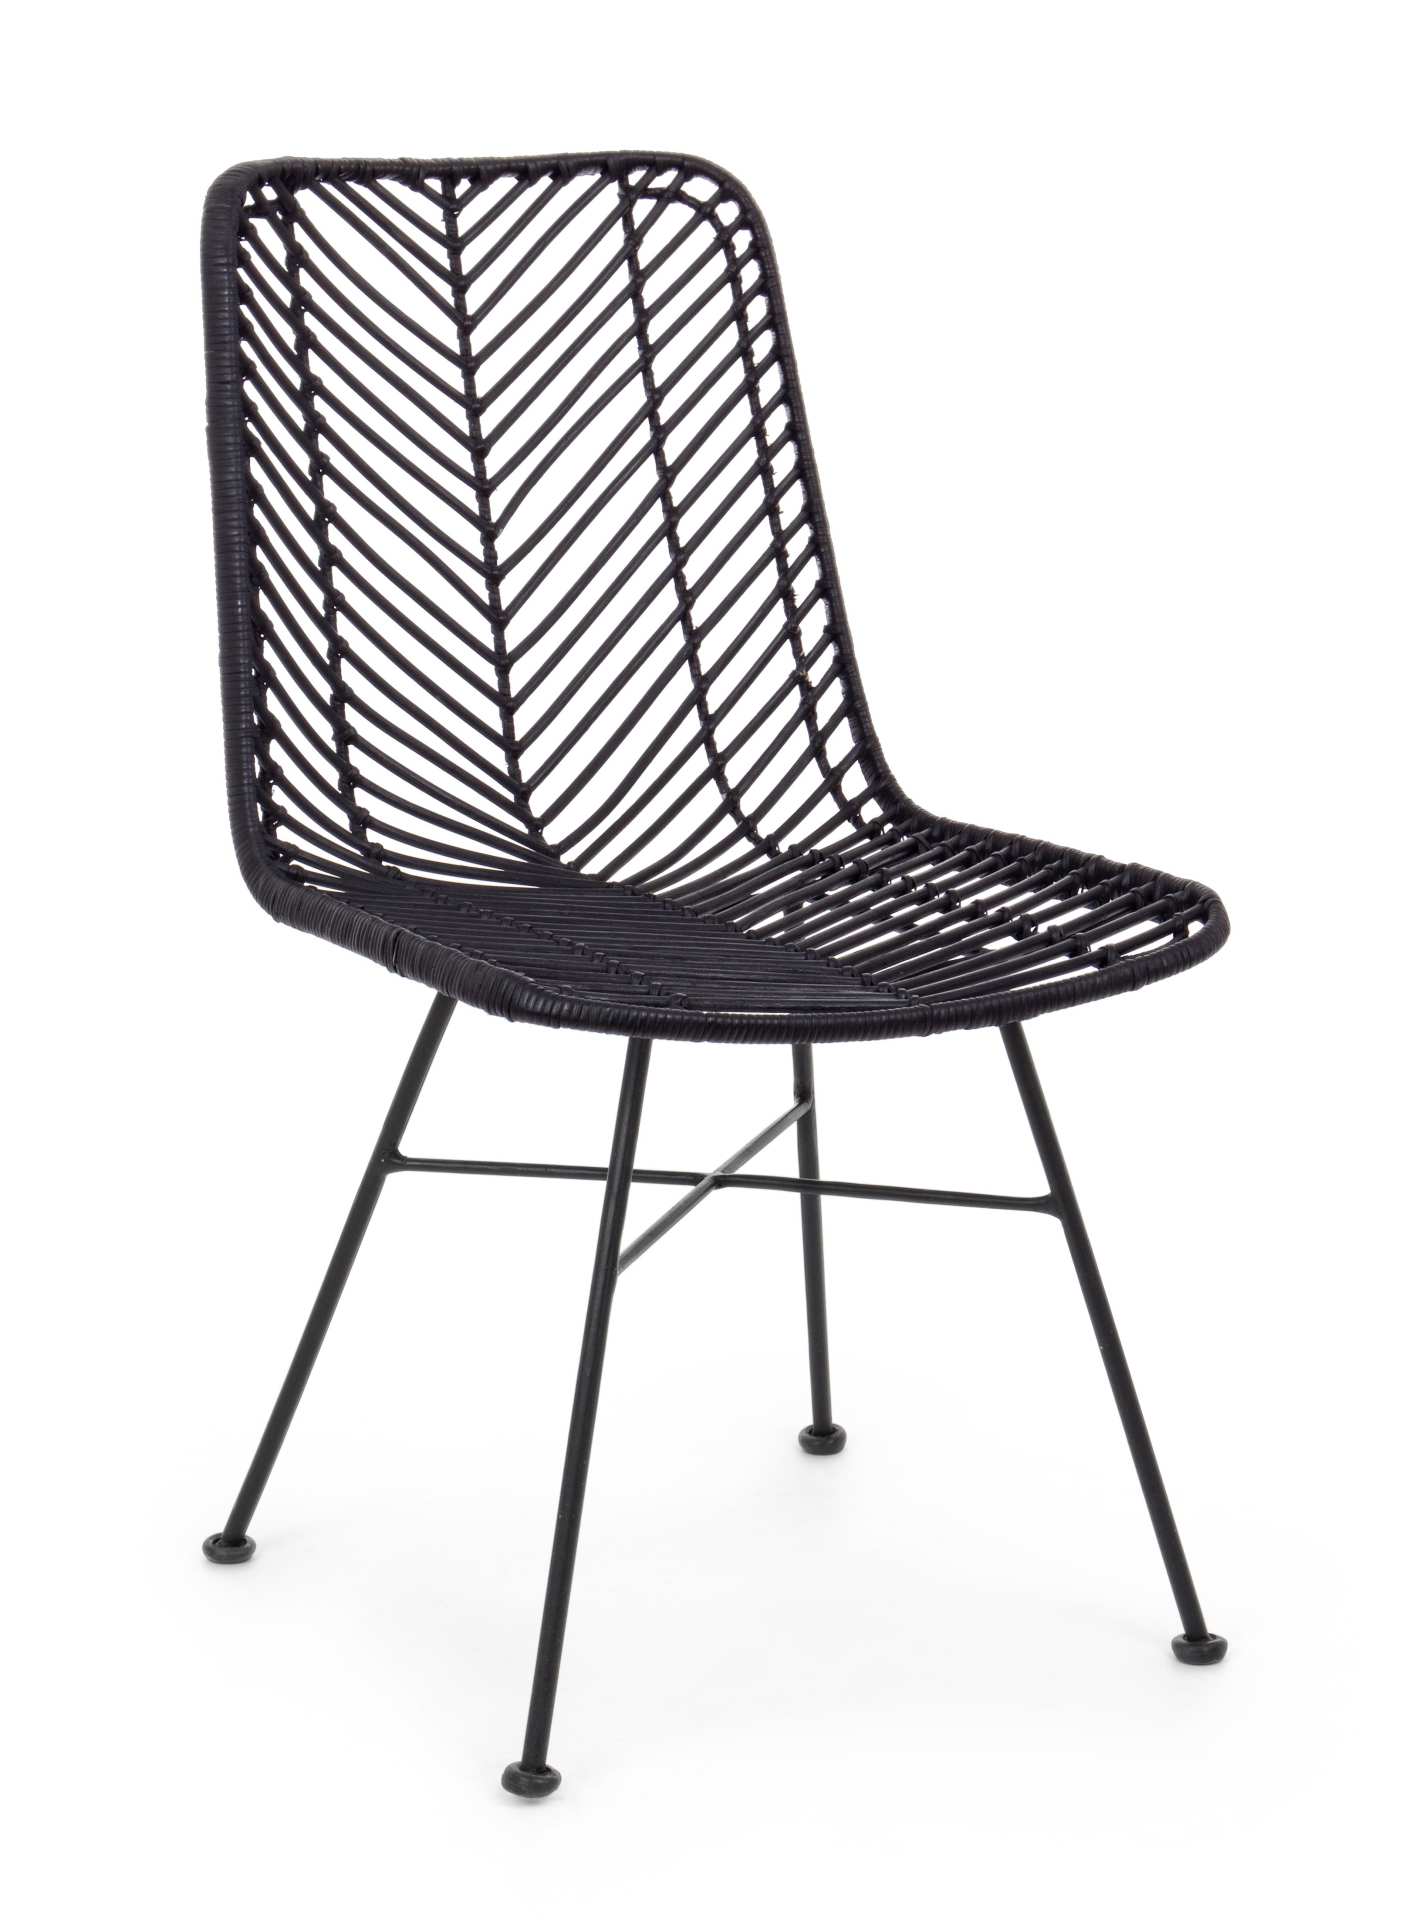 Der Stuhl Lorena überzeugt mit seinem modernem aber auch besonderem Design. Gefertigt wurde der Stuhl aus Rattan, welcher einen schwarzen Farbton besitzt. Das Gestell ist aus Metall und ist Schwarz. Die Sitzhöhe beträgt 45 cm.